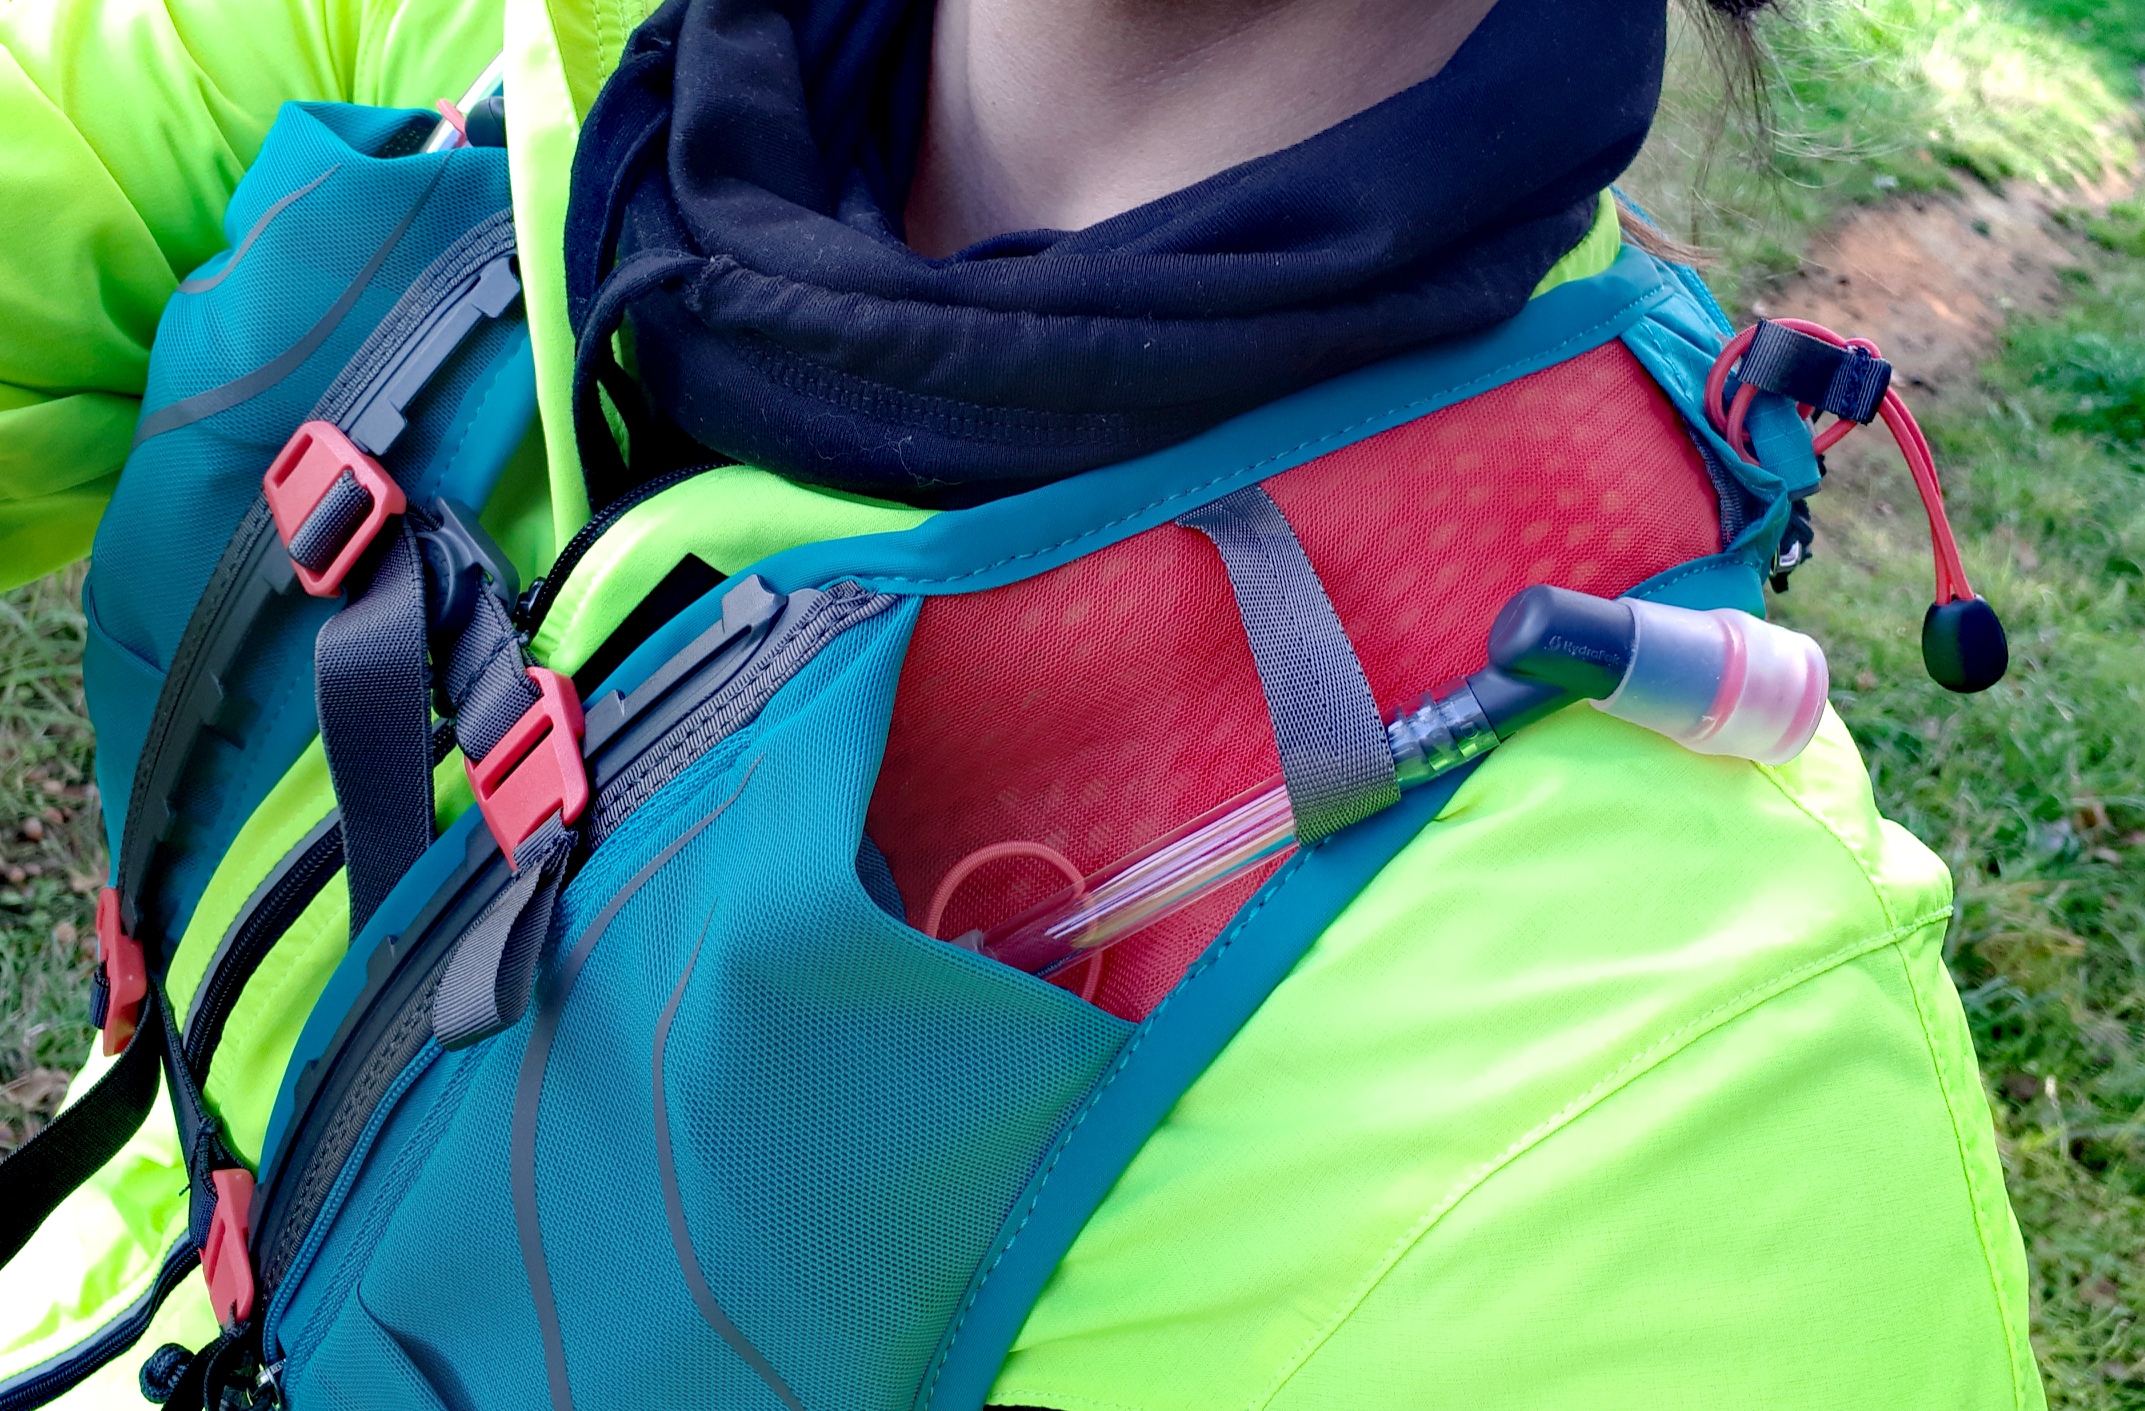 Osprey S20 gilet trail DYNA – Le sac à dos qui va révolutionner